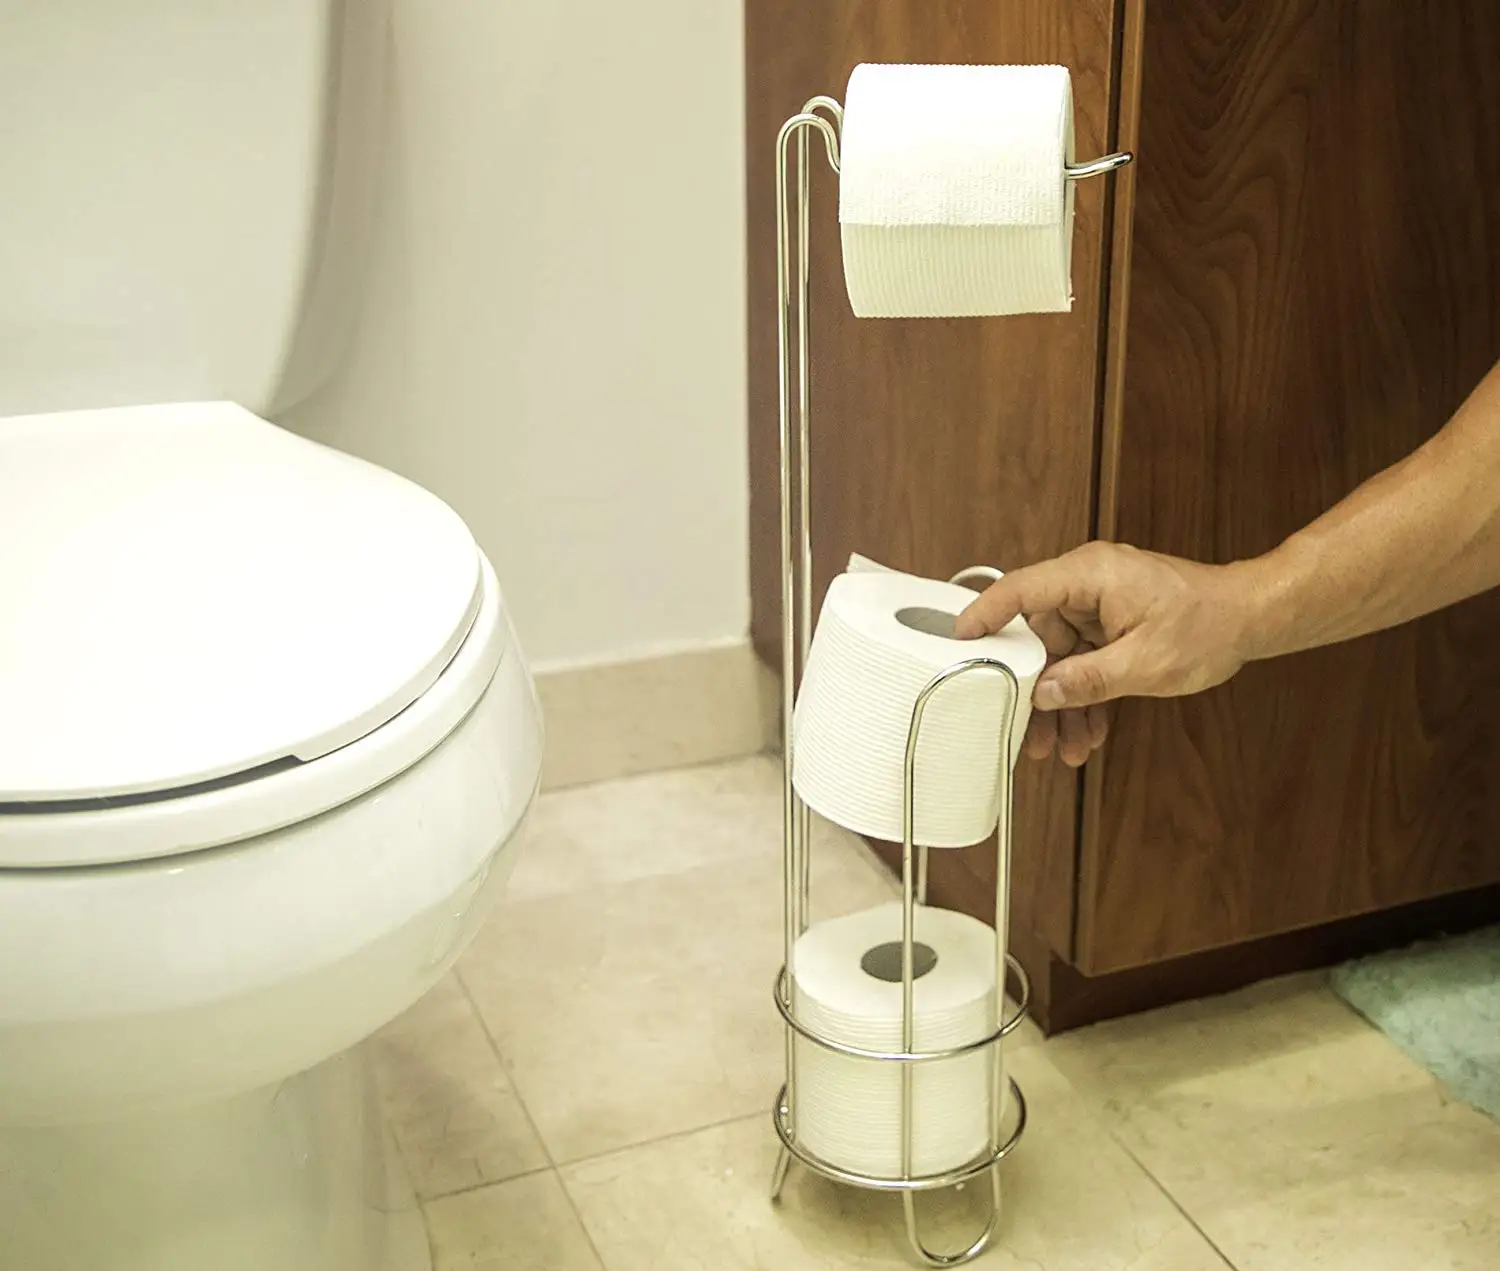 Отдельно стоящий держатель рулона туалетной бумаги и диспенсер для ванных комнат Серебряная подставка для унитаза с дополнительным рулоном для хранения до 4 рулонов